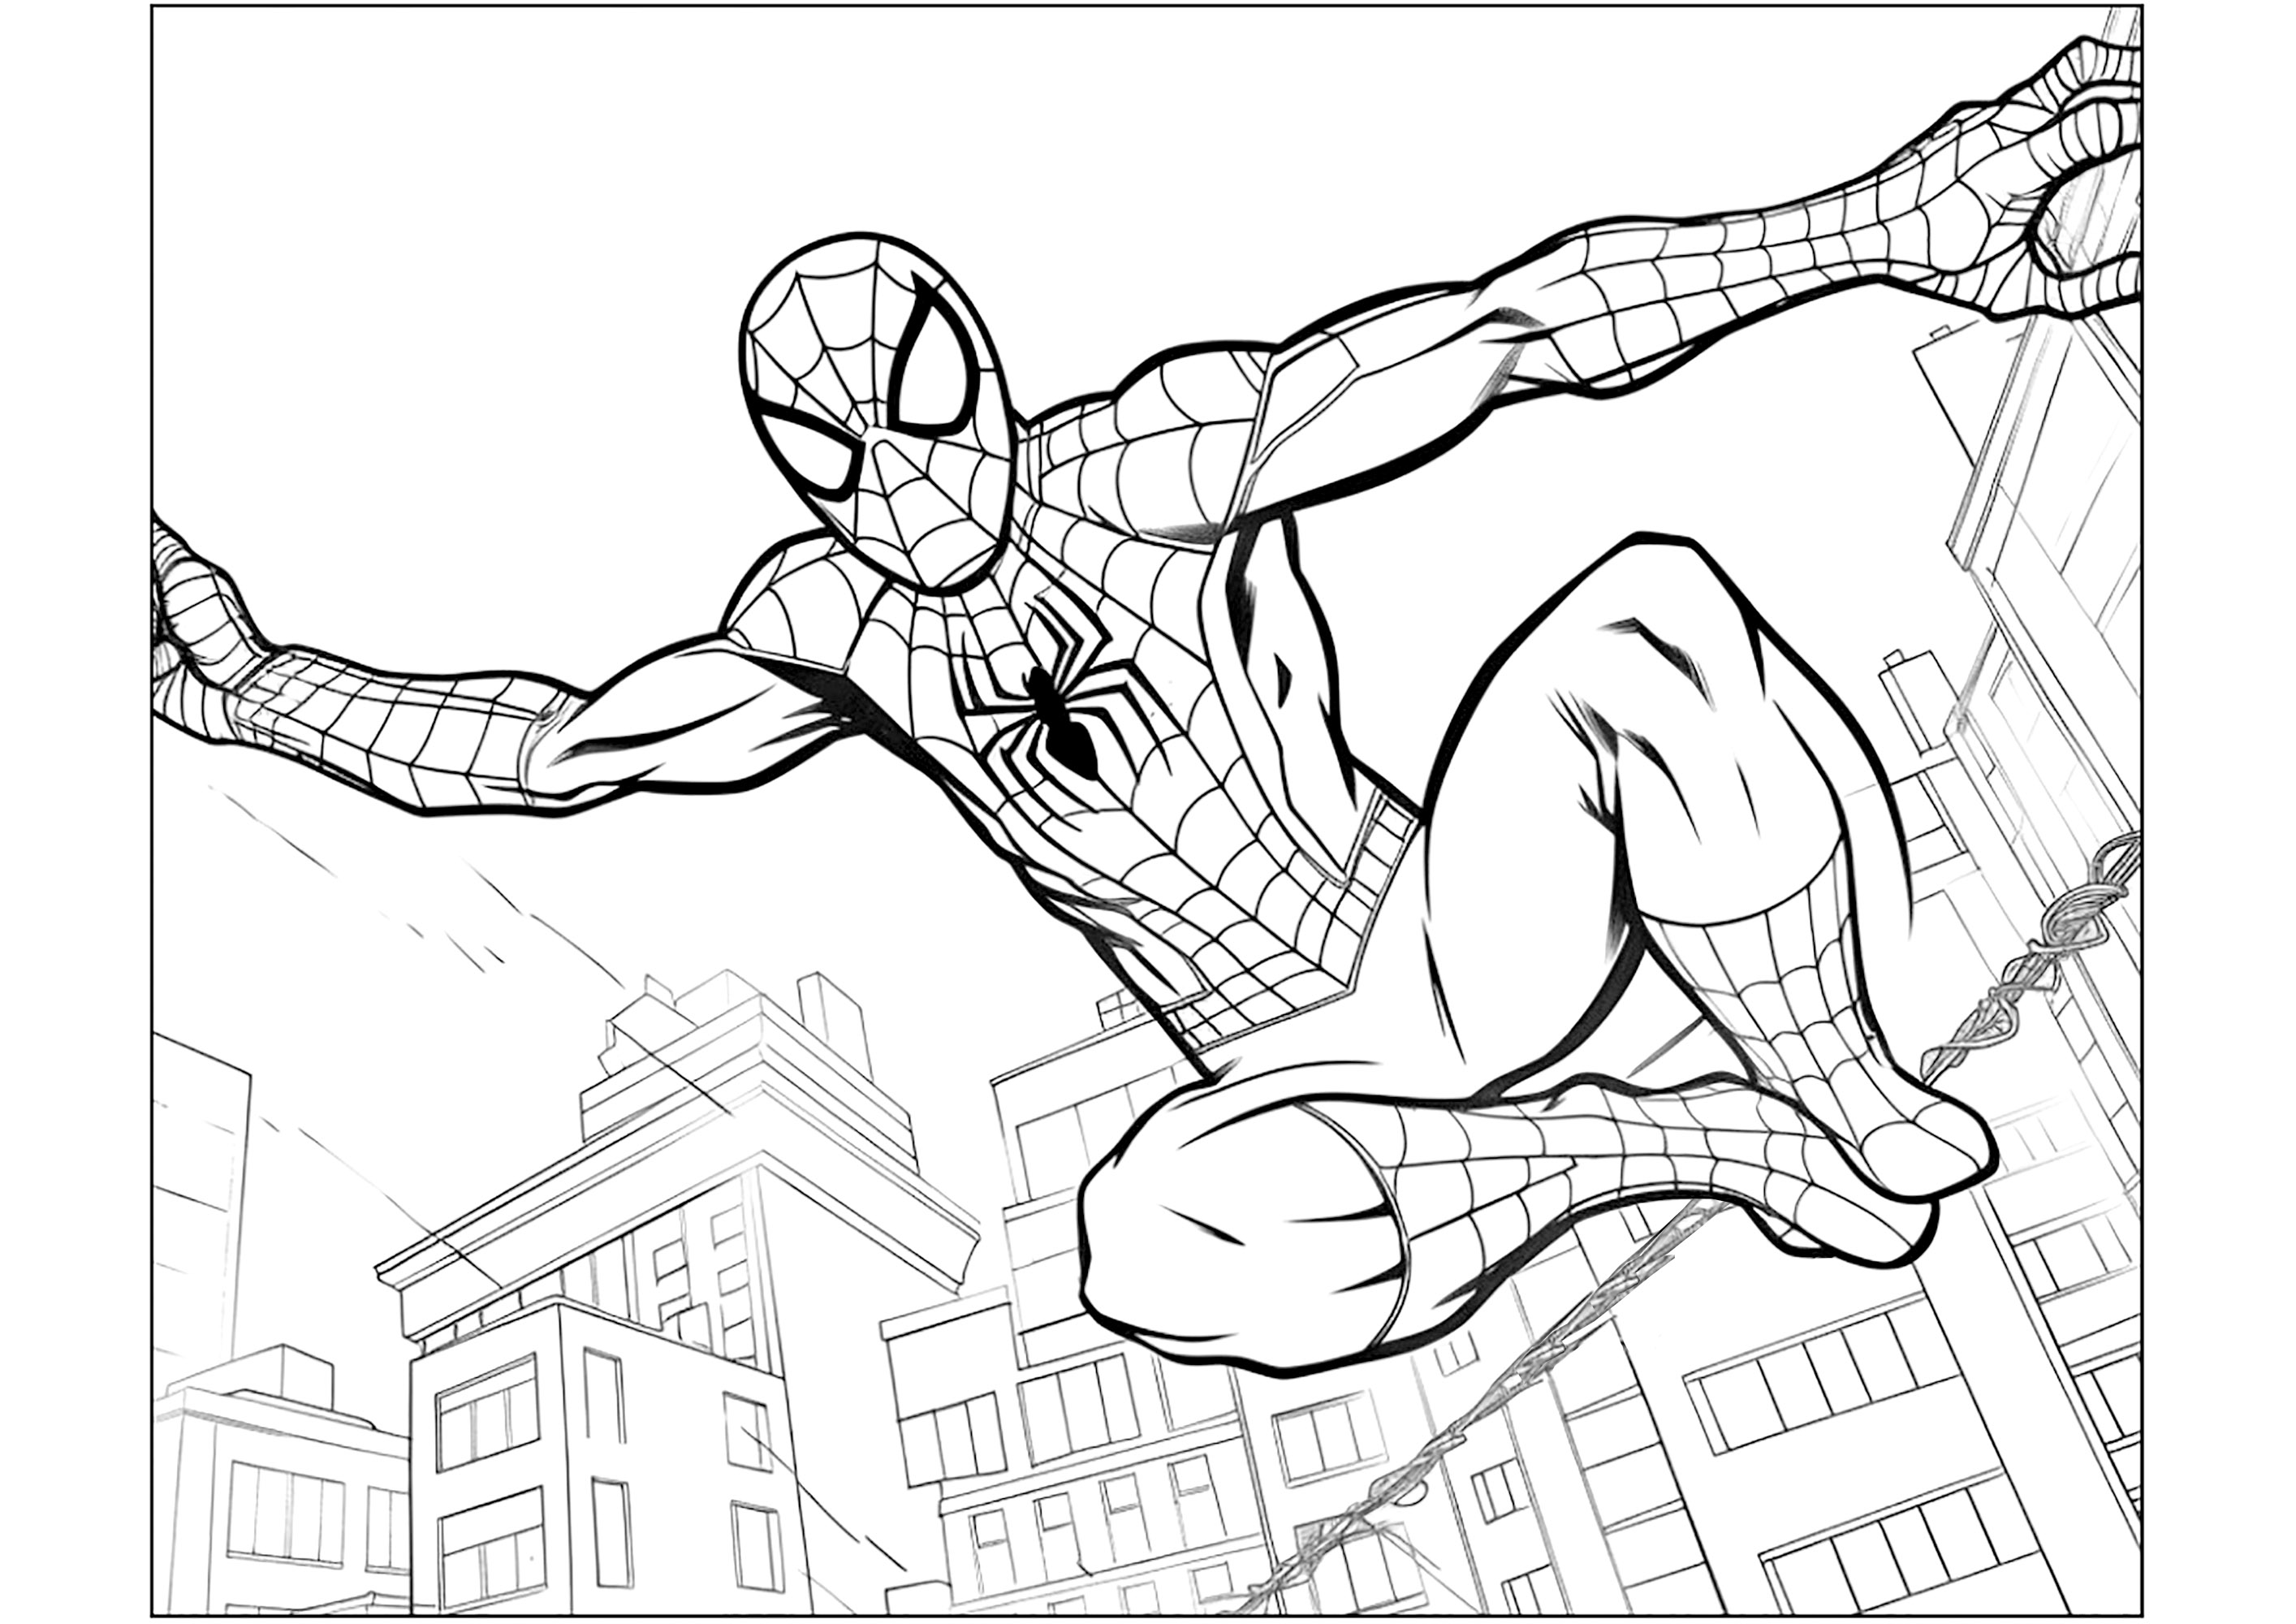 Spiderman en acción sobre los tejados de Nueva York